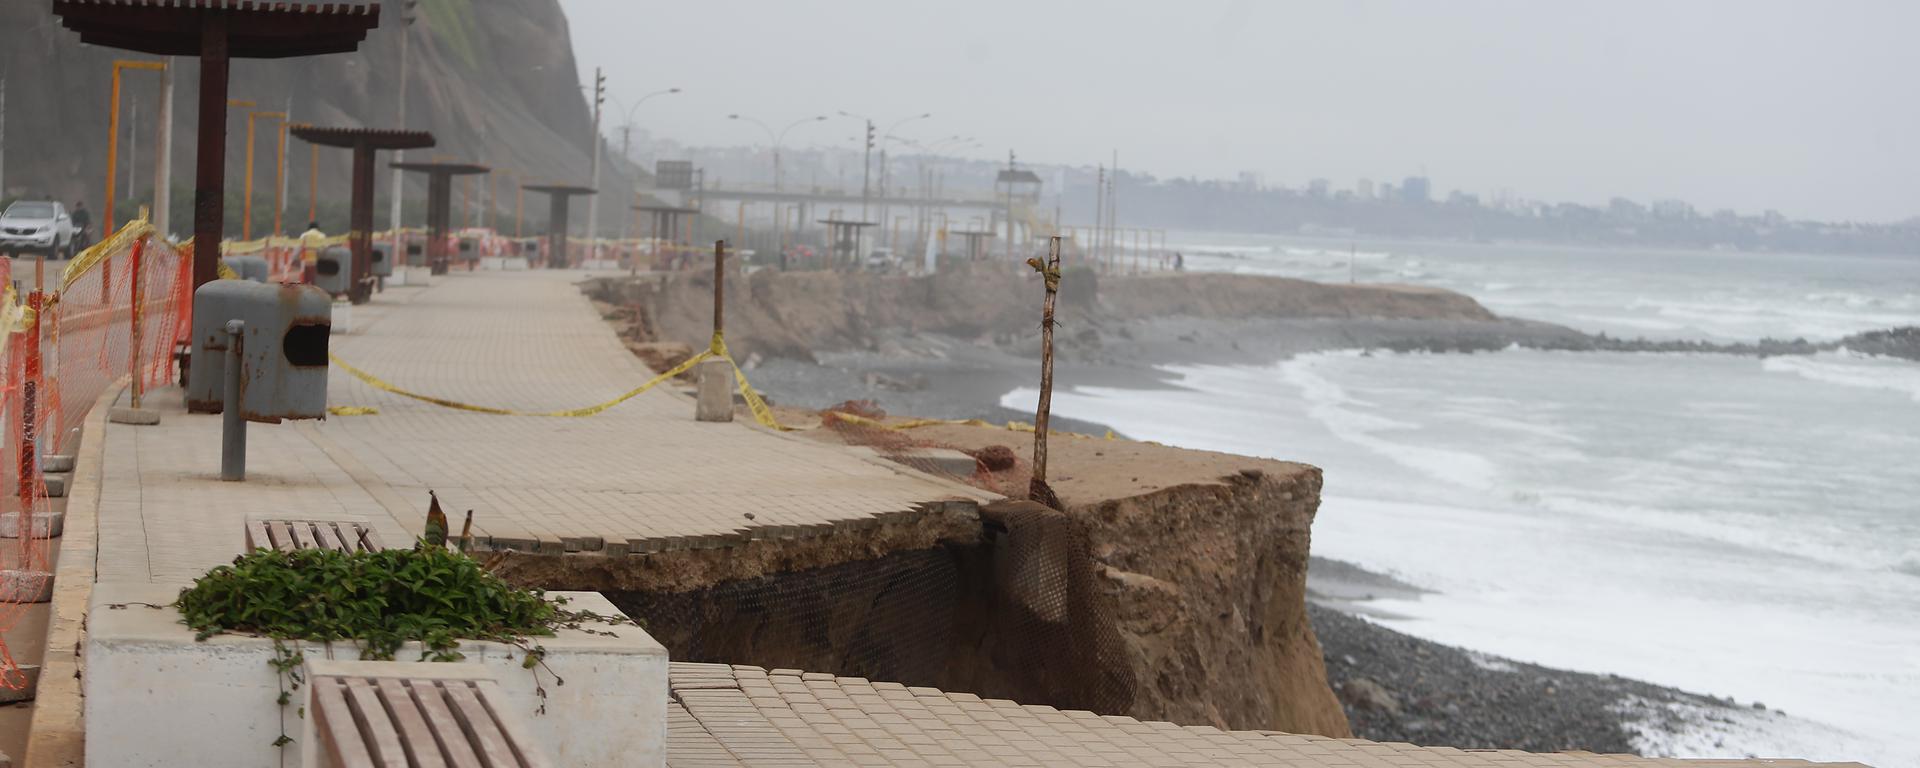 Daños en playas de Miraflores fueron alertados desde setiembre: la comuna suma nueve balnearios afectados